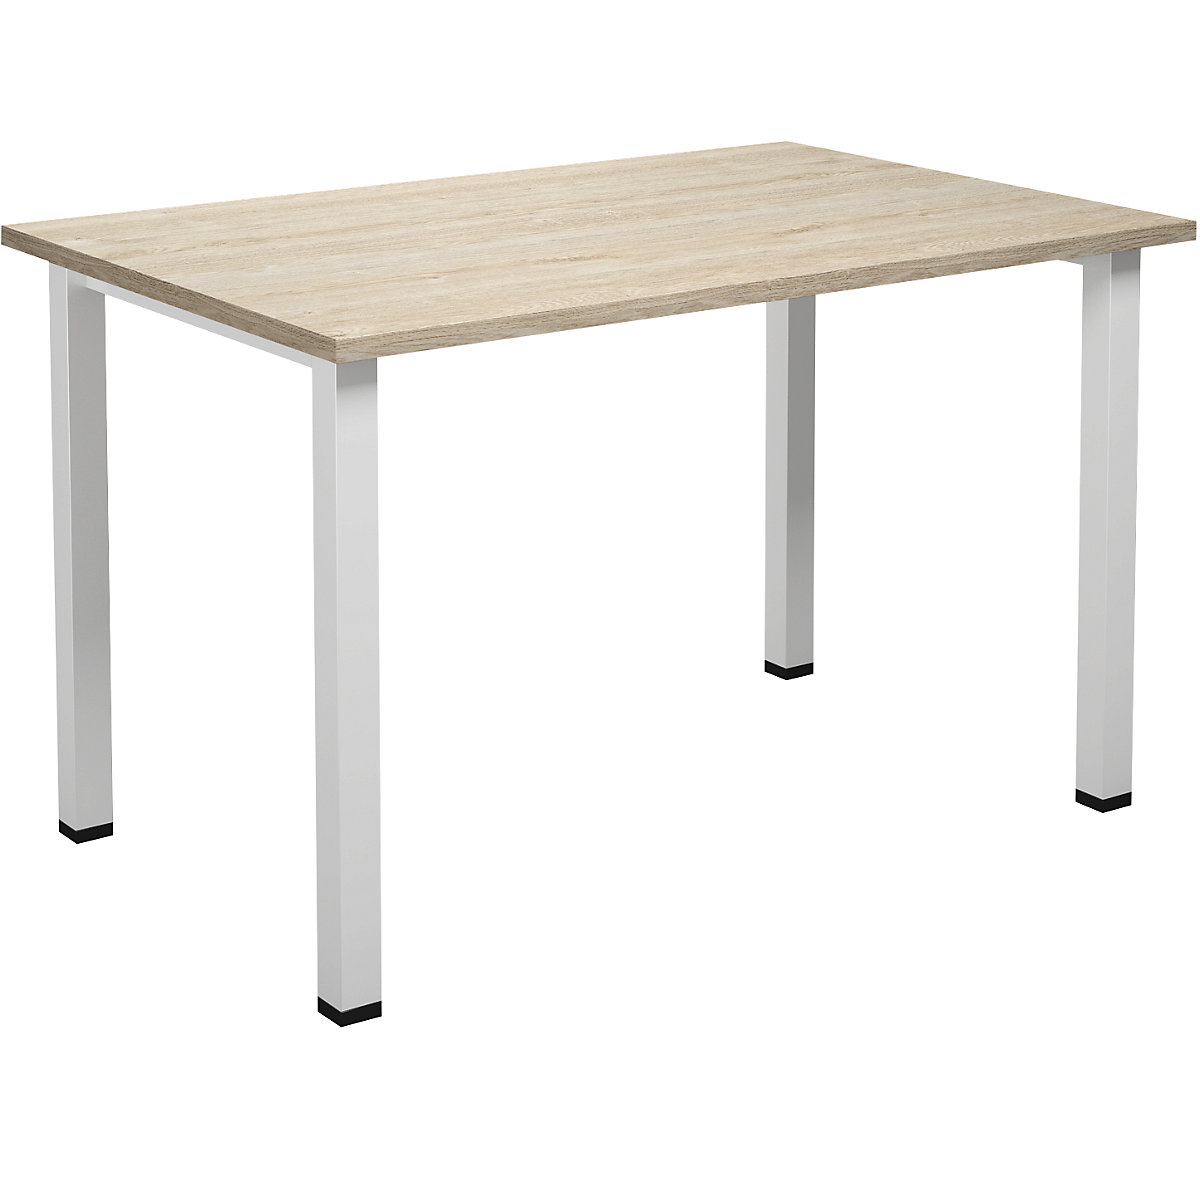 DUO-U multi-purpose desk, straight tabletop, WxD 1200 x 800 mm, oak, white-16